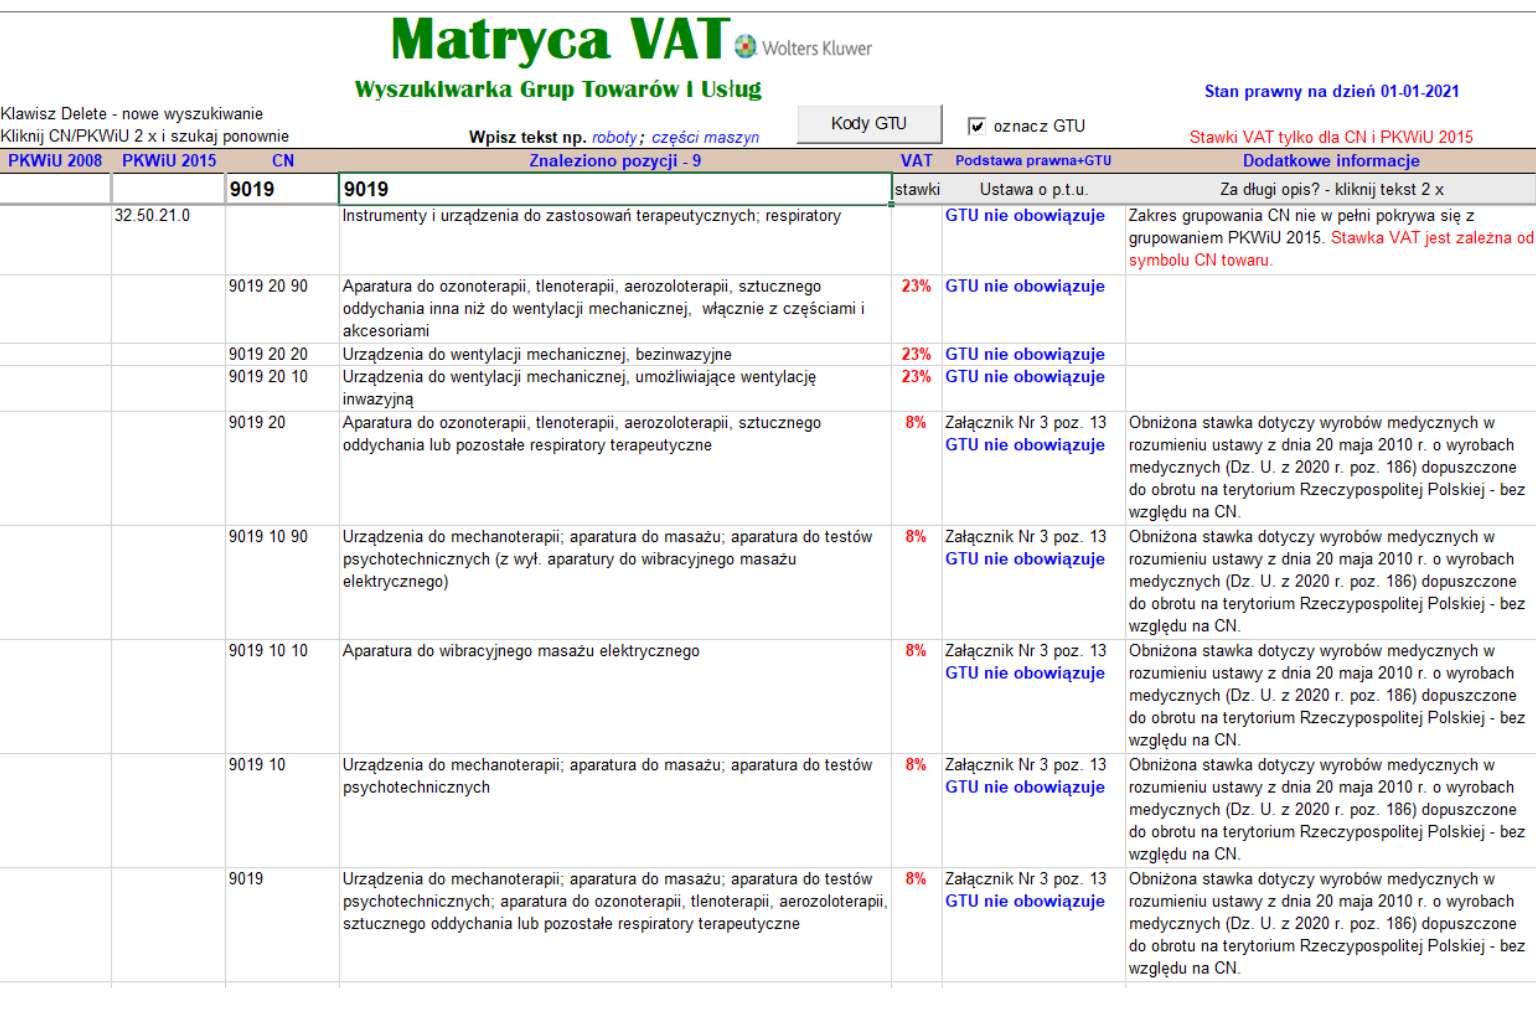 Matryca stawek VAT z kodami GTU - wyszukiwarka